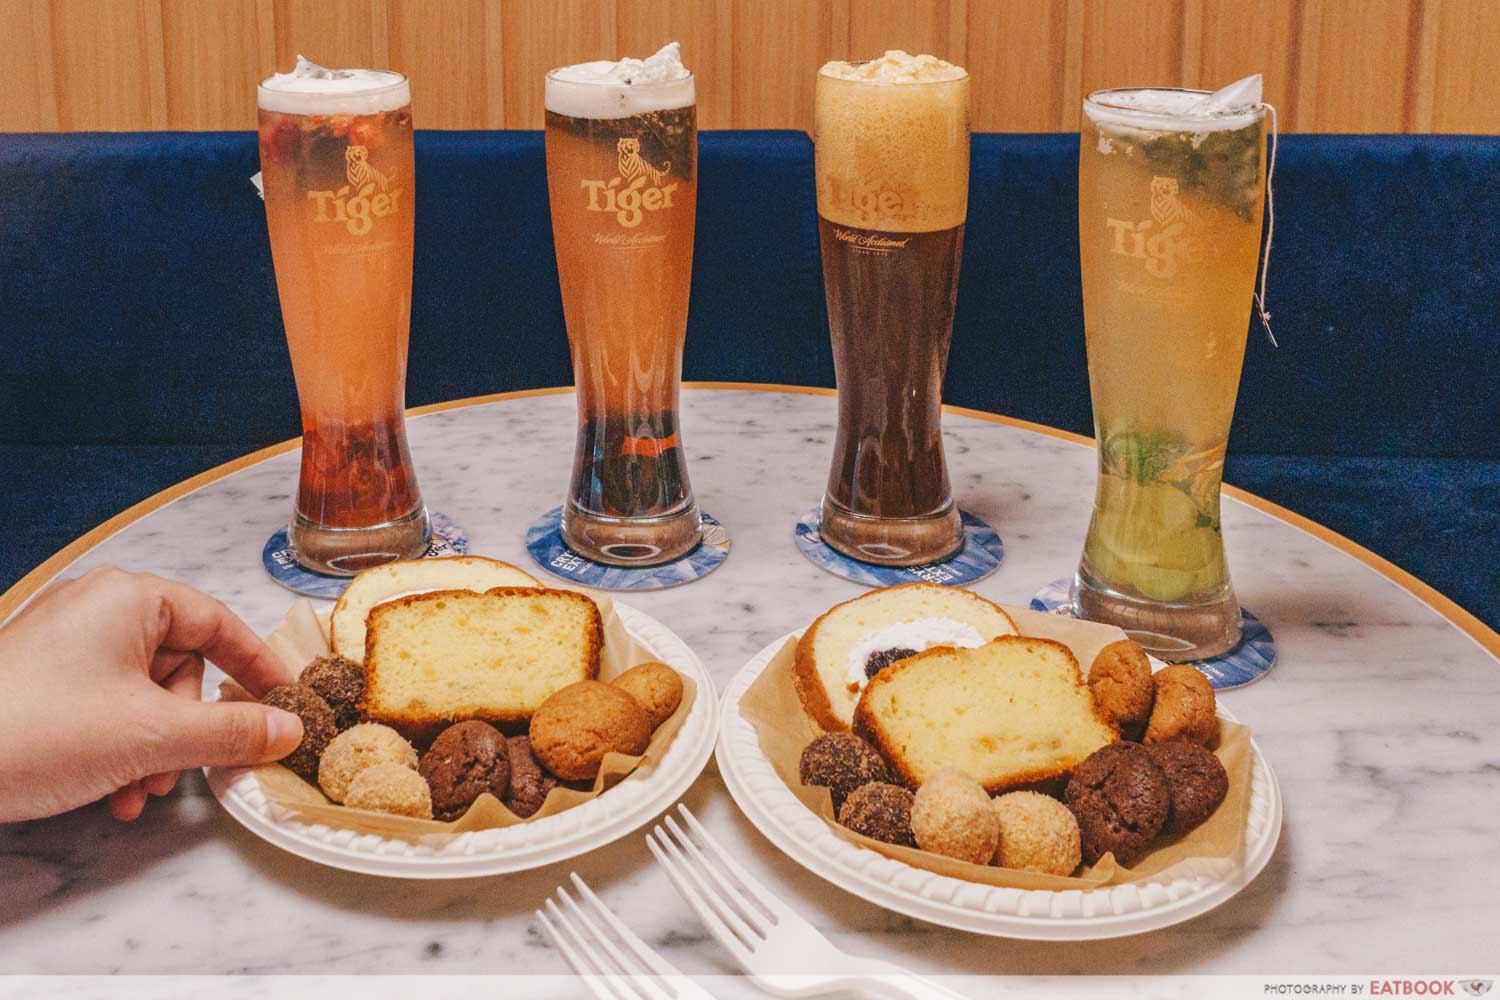 paris baguette somerset tiger beer cocktails